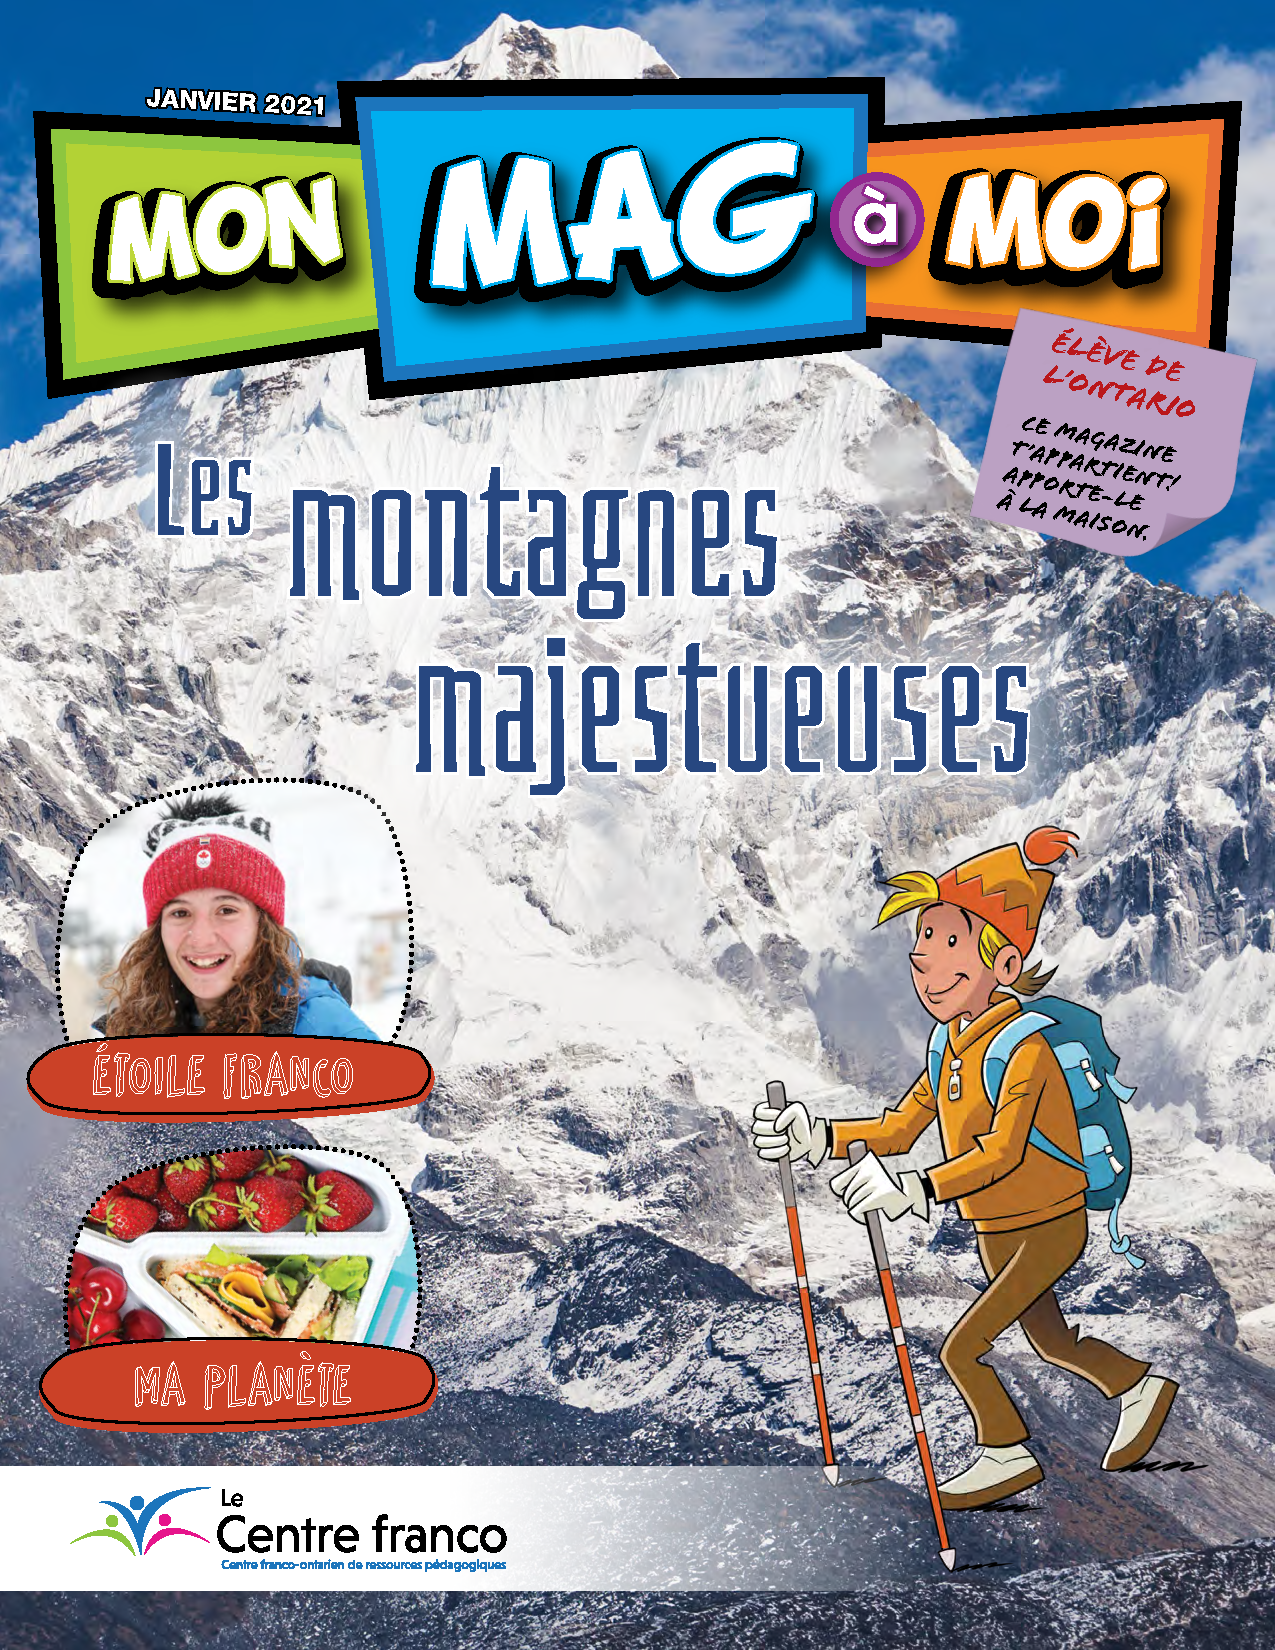 Visionner le magazine Mon Mag à Moi volume 14 numéro 1.